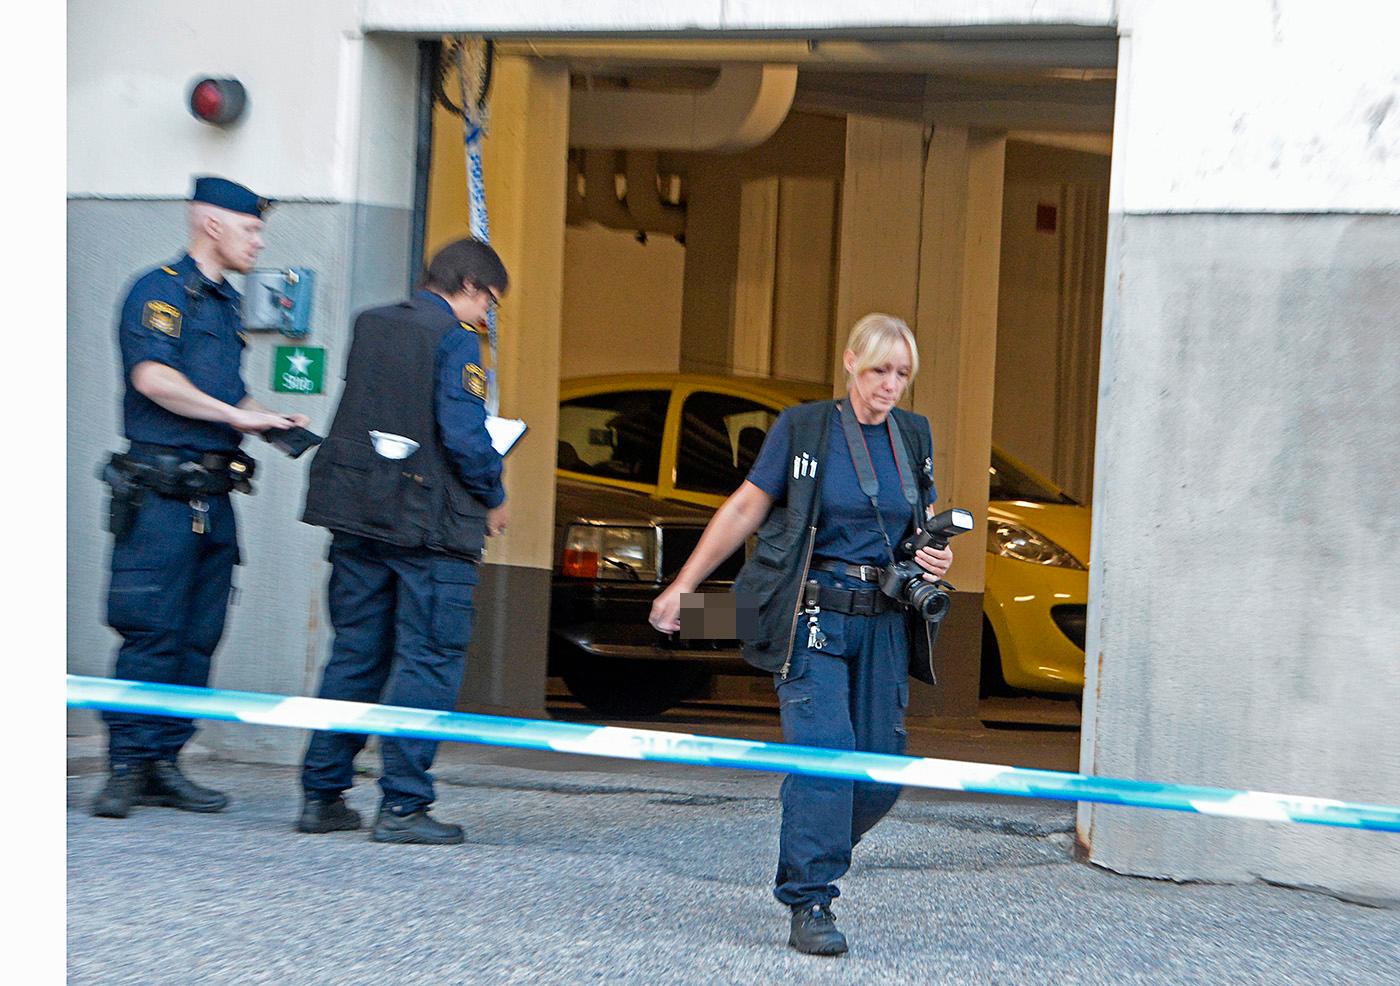 I mitten av september sköts en man och en kvinna till döds i ett garage i Axelsberg.